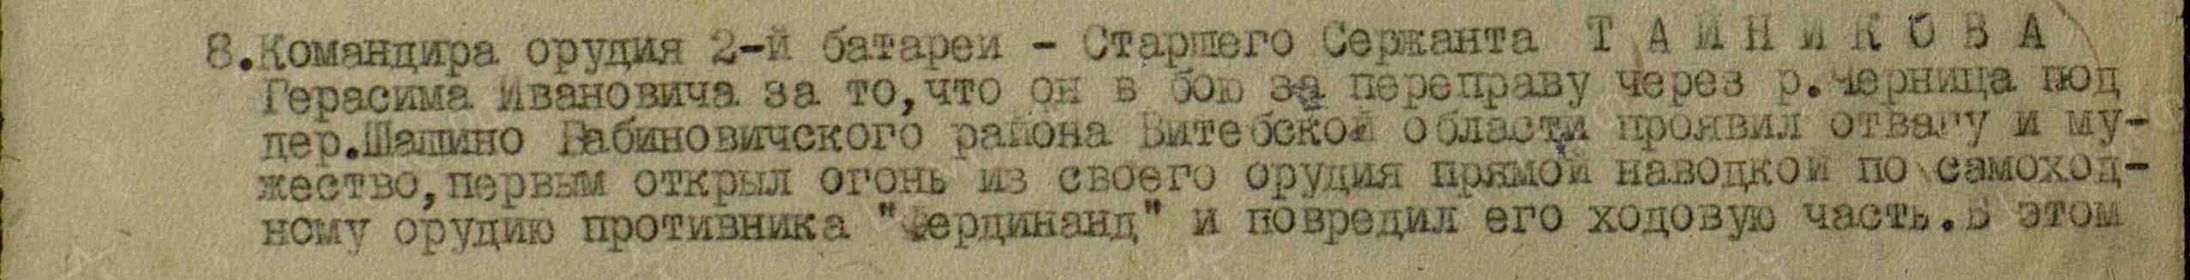 Приказ подразделения №: 12/н от: 16.04.1944	 Издан: 1966 иптап 43 оиптабр РГК